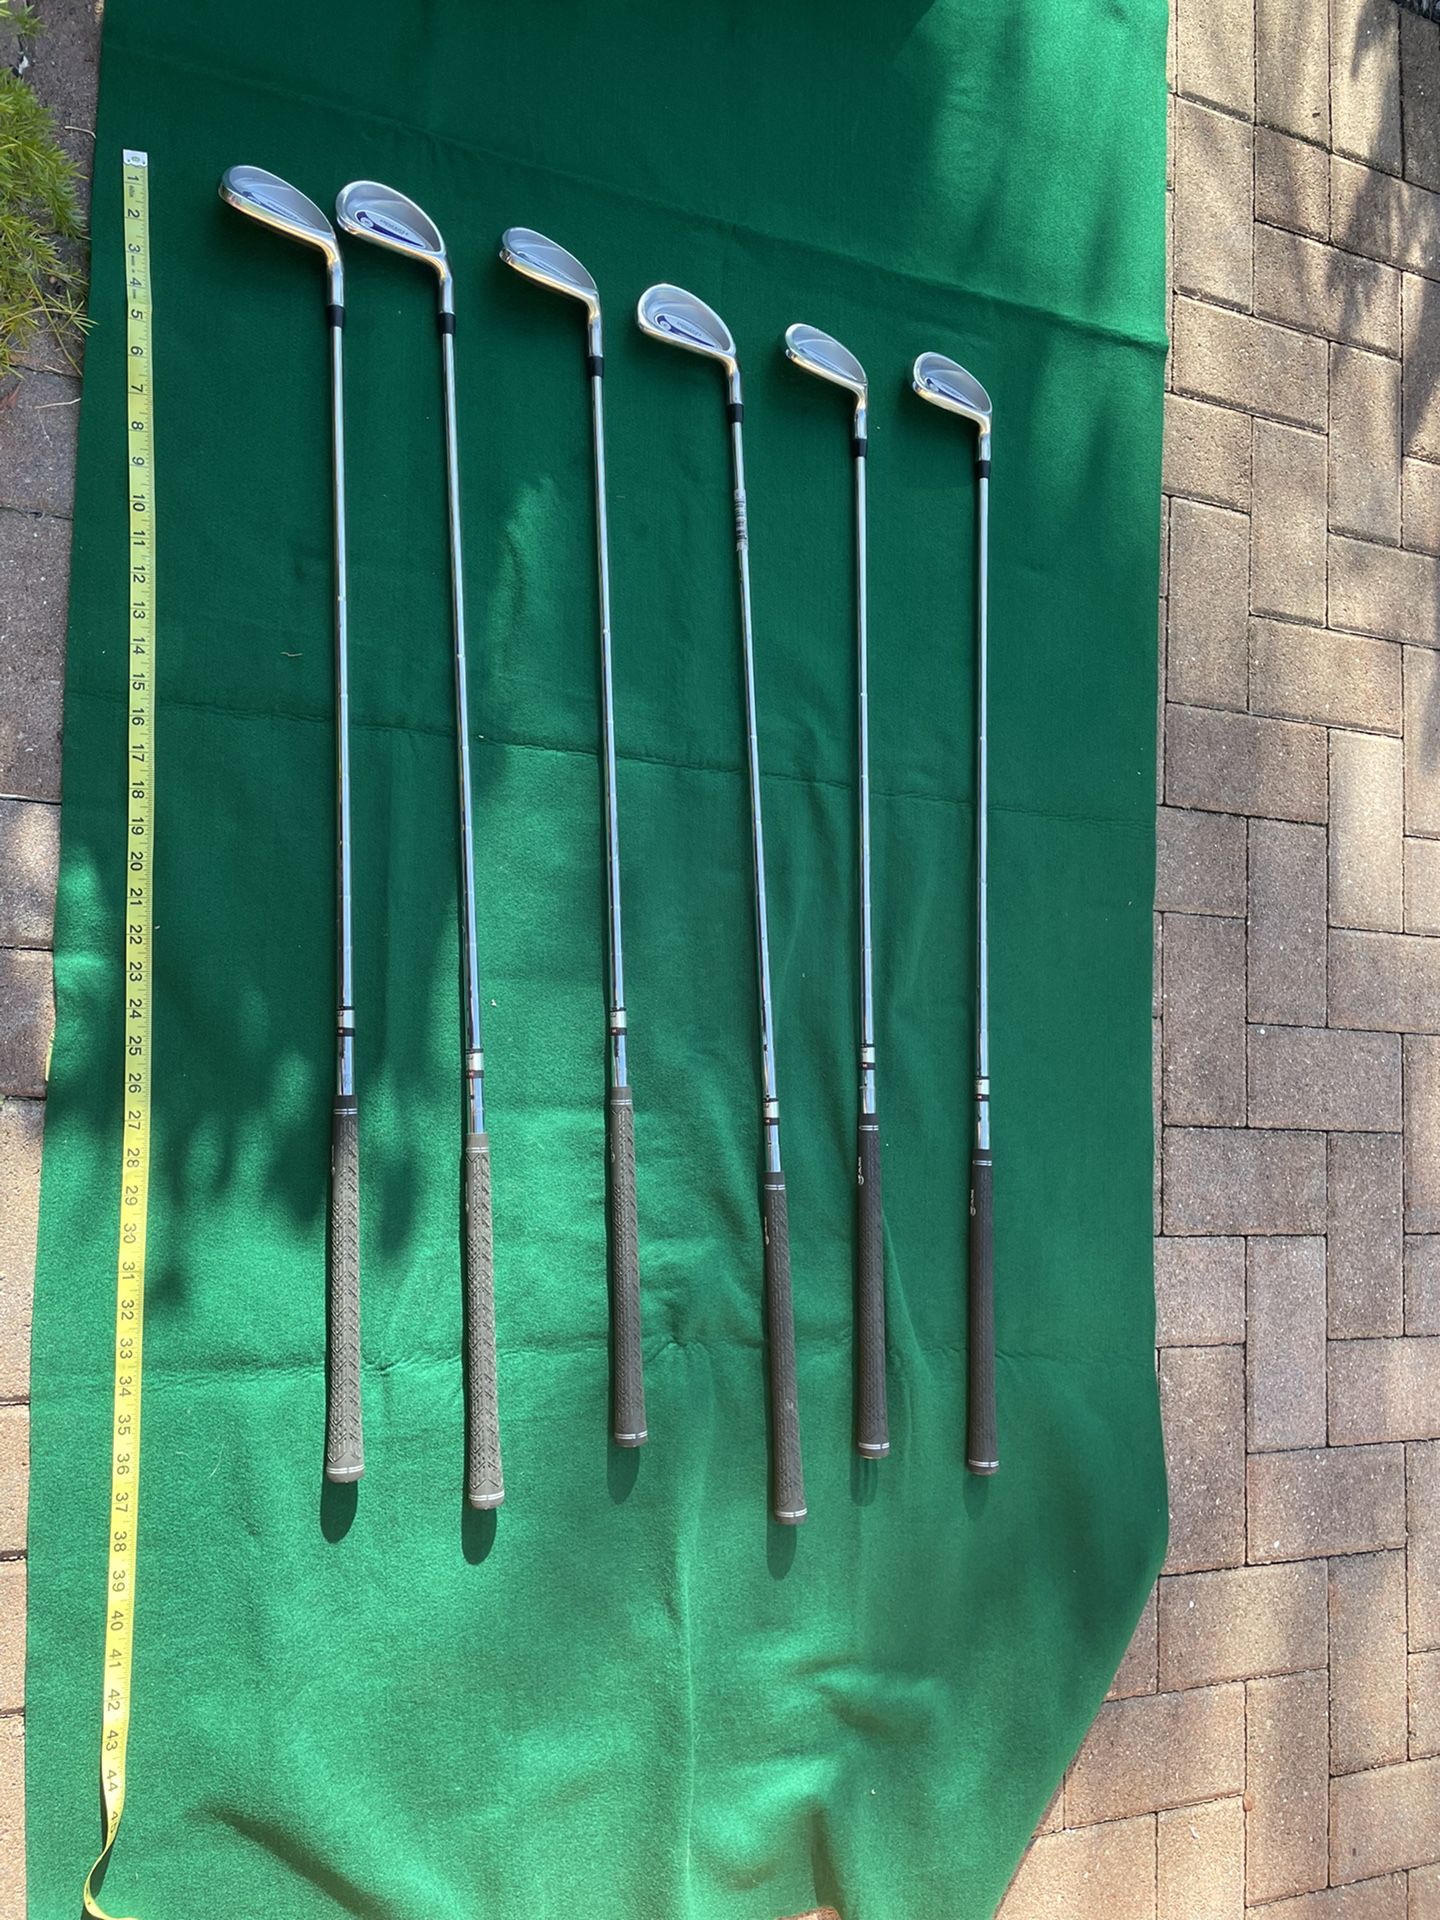 Ram golf clubs 6 pc set Concept